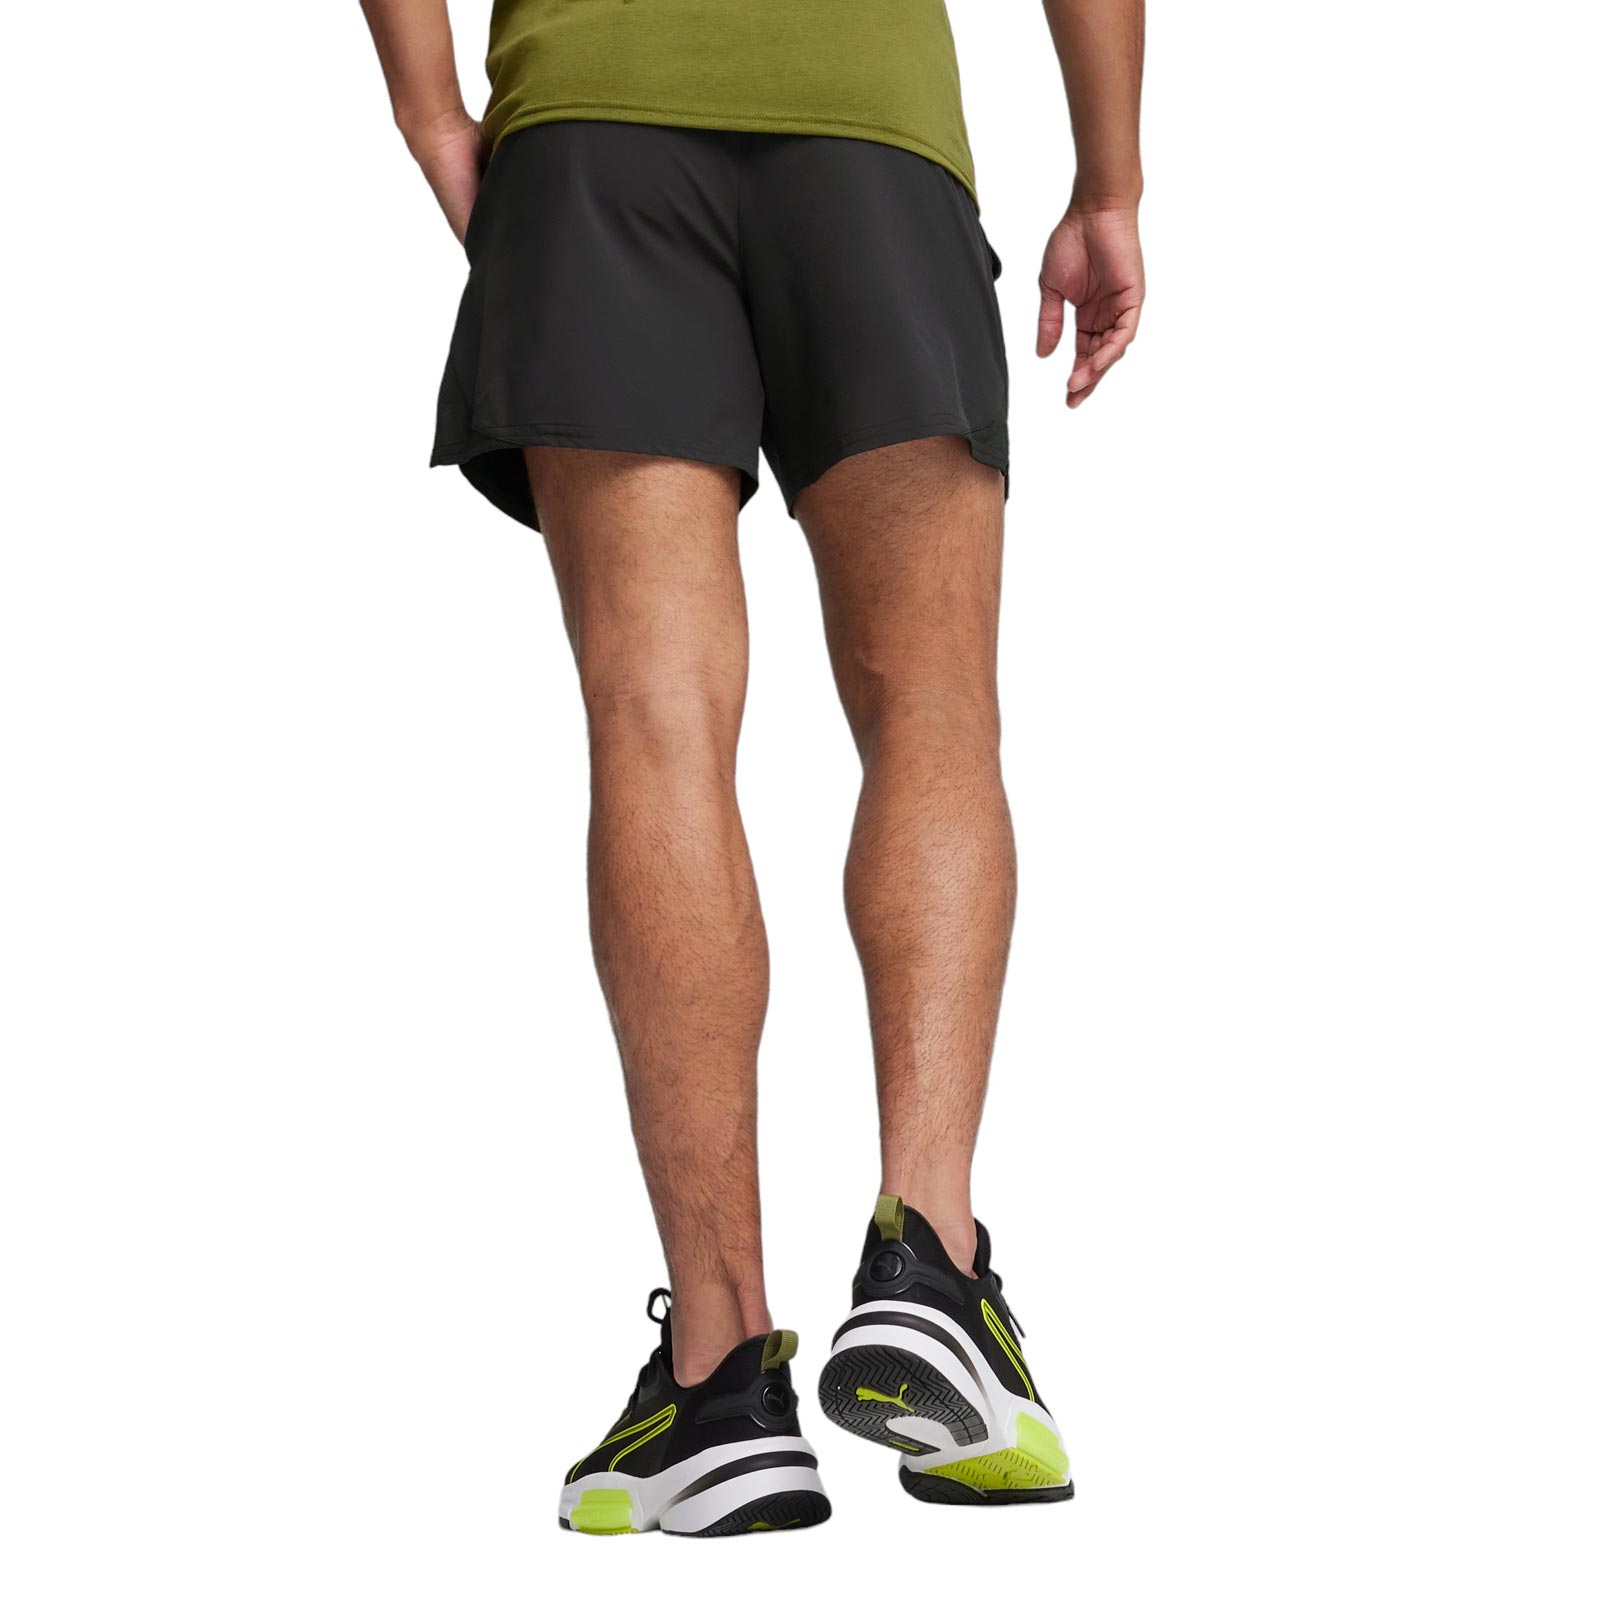 Puma 5 Inch Ultrabreathe Stretch Mens Training Shorts